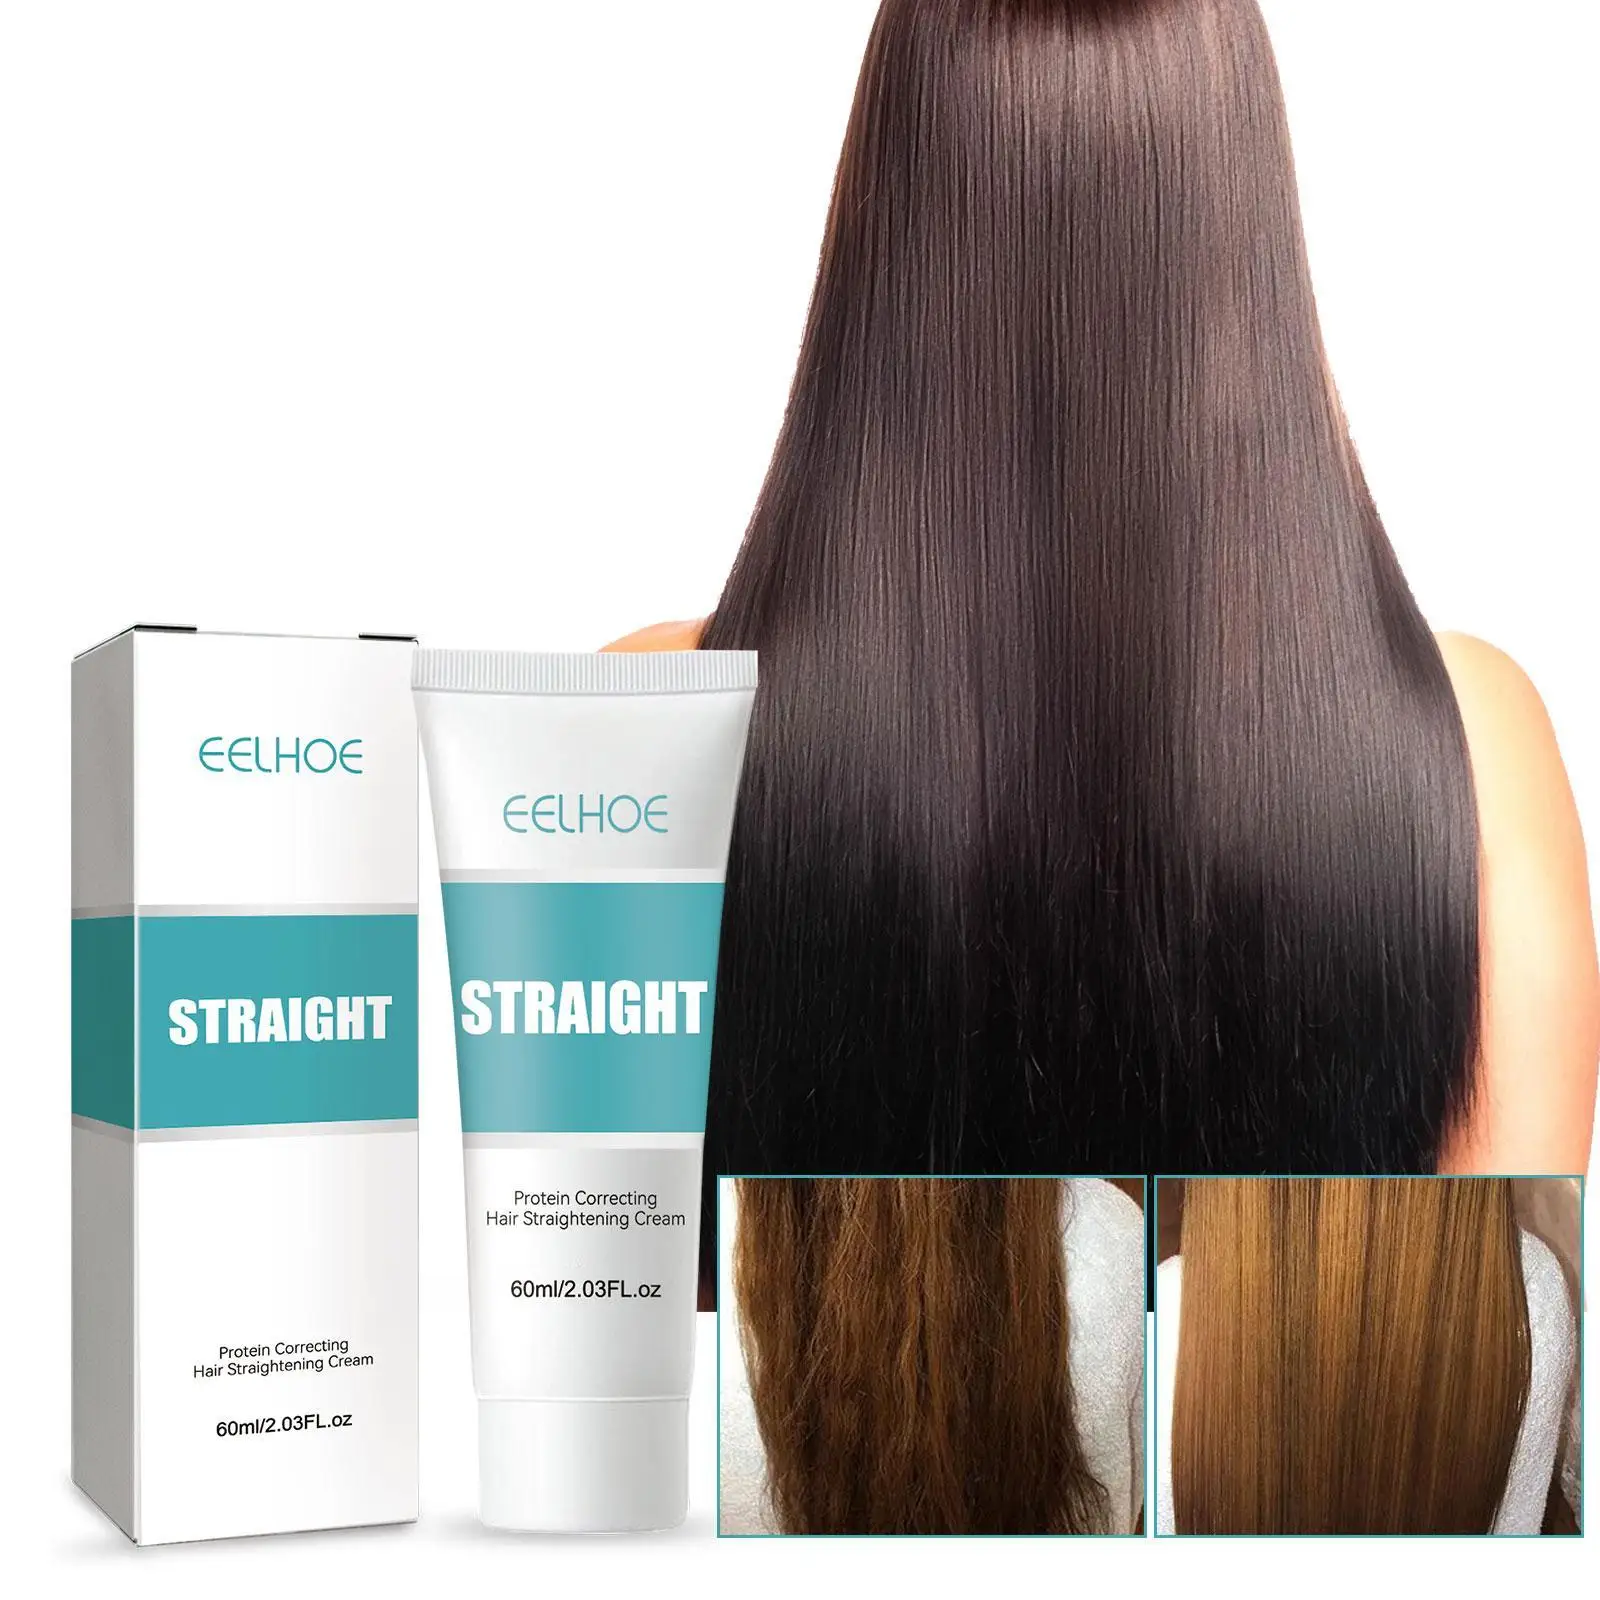 

60 мл Кератиновый протеиновый крем для коррекции волос, восстанавливает питание и влагу волос, не вредит волосам, легко смягчает